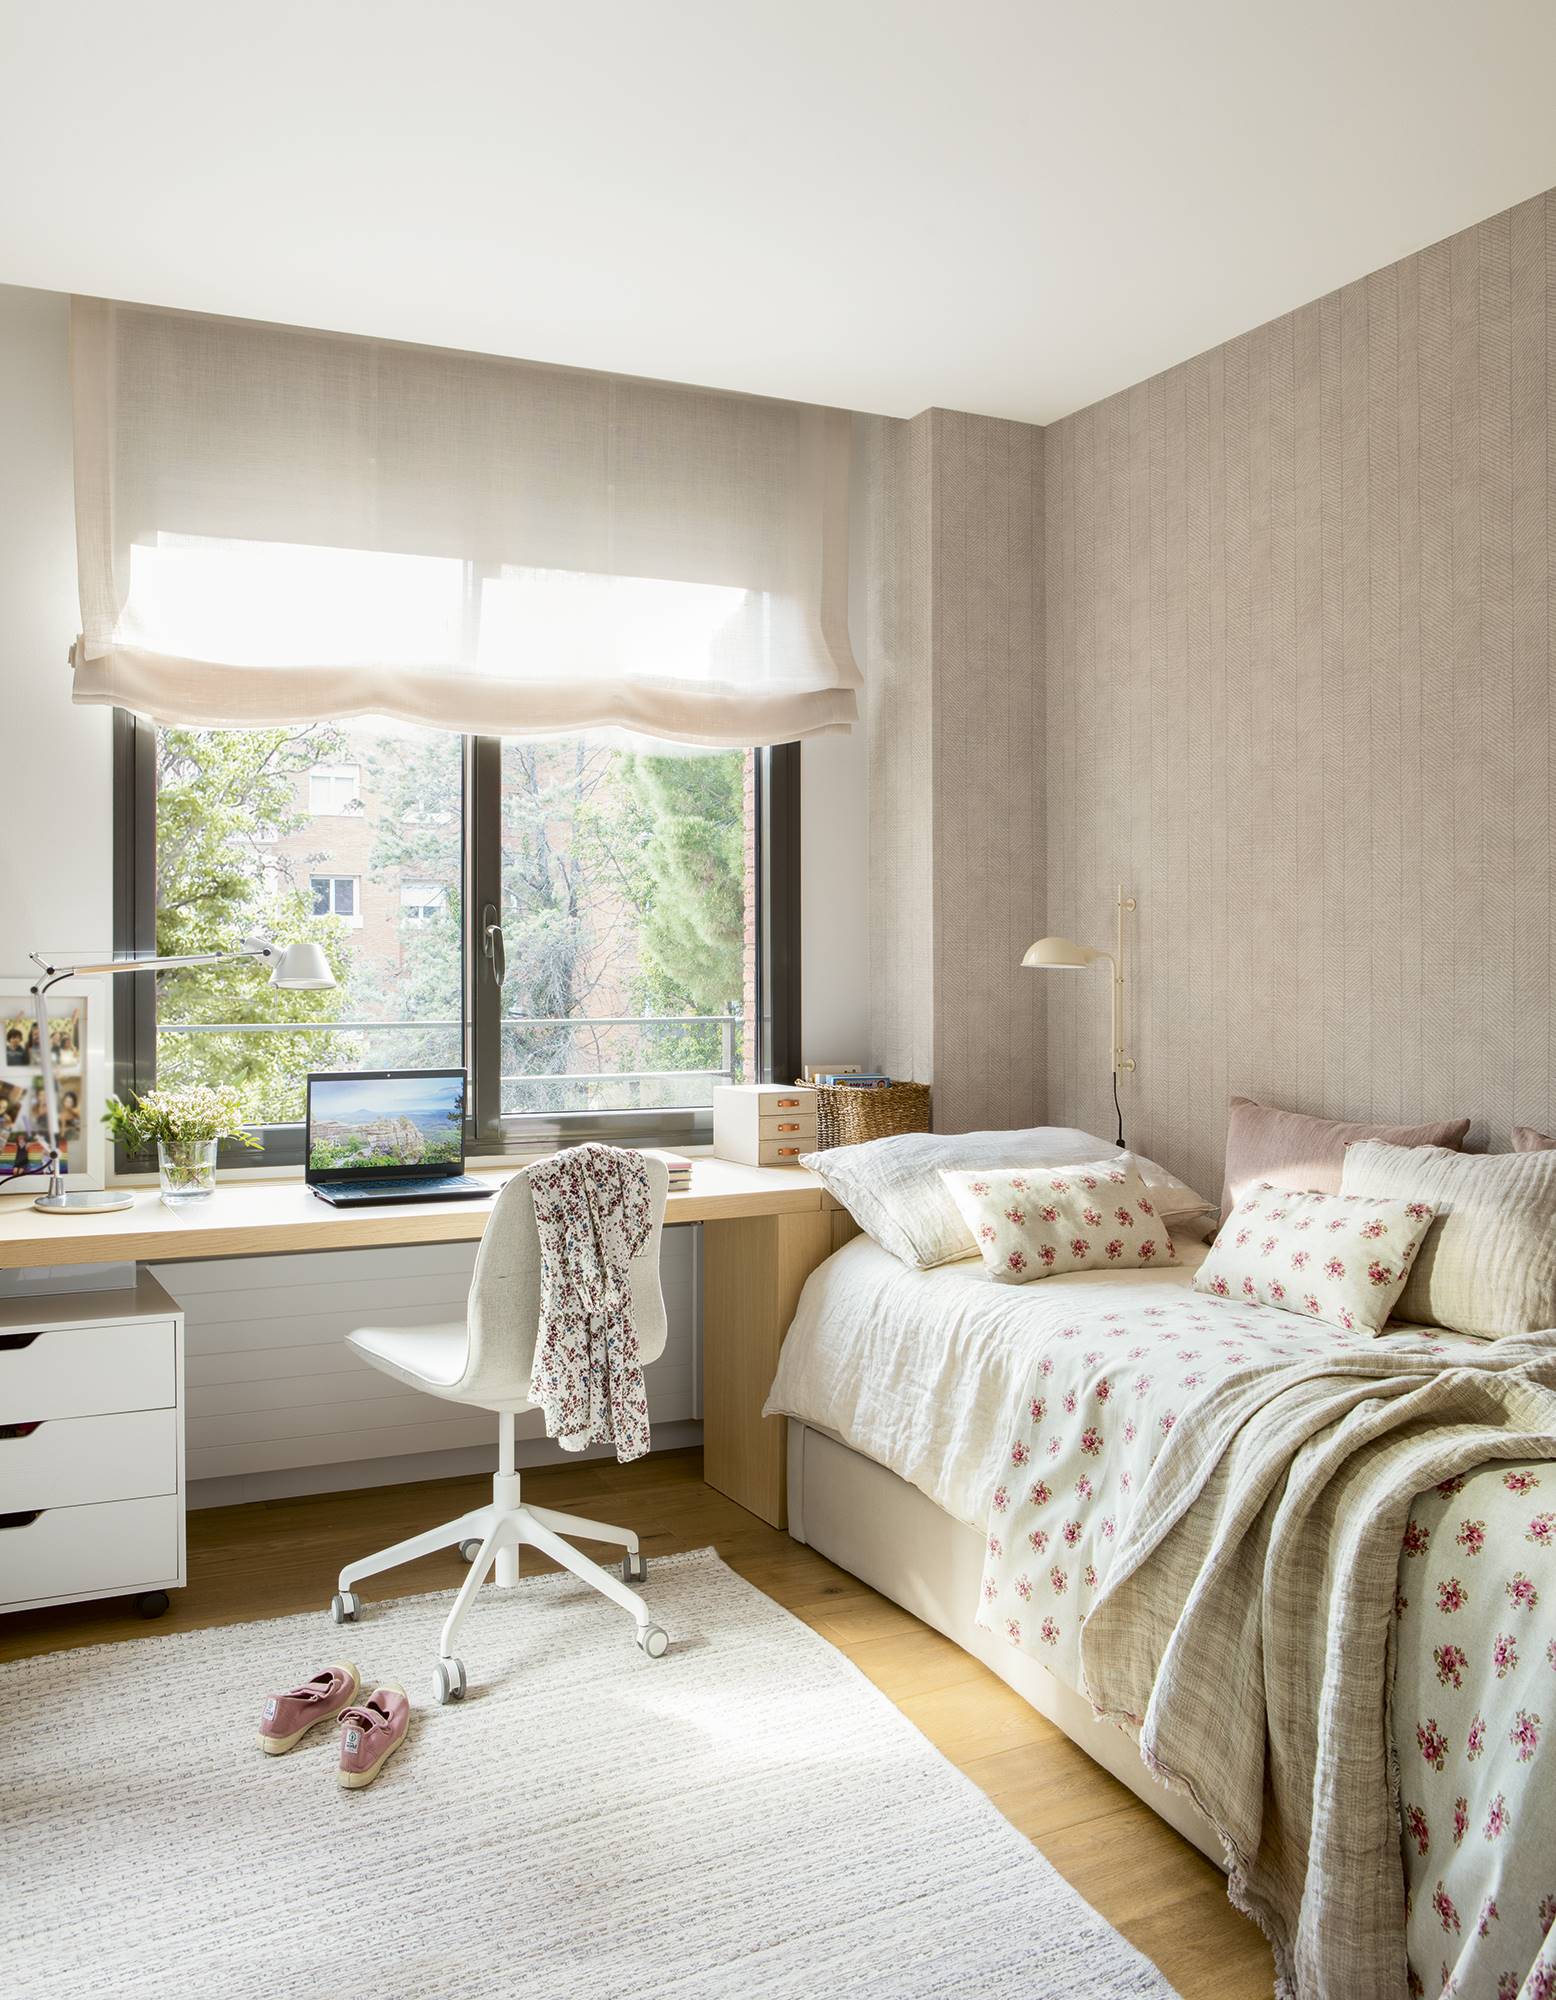 Dormitorio infantil con papel pintado en espiga y ropa de cama blanca con flores rosas.